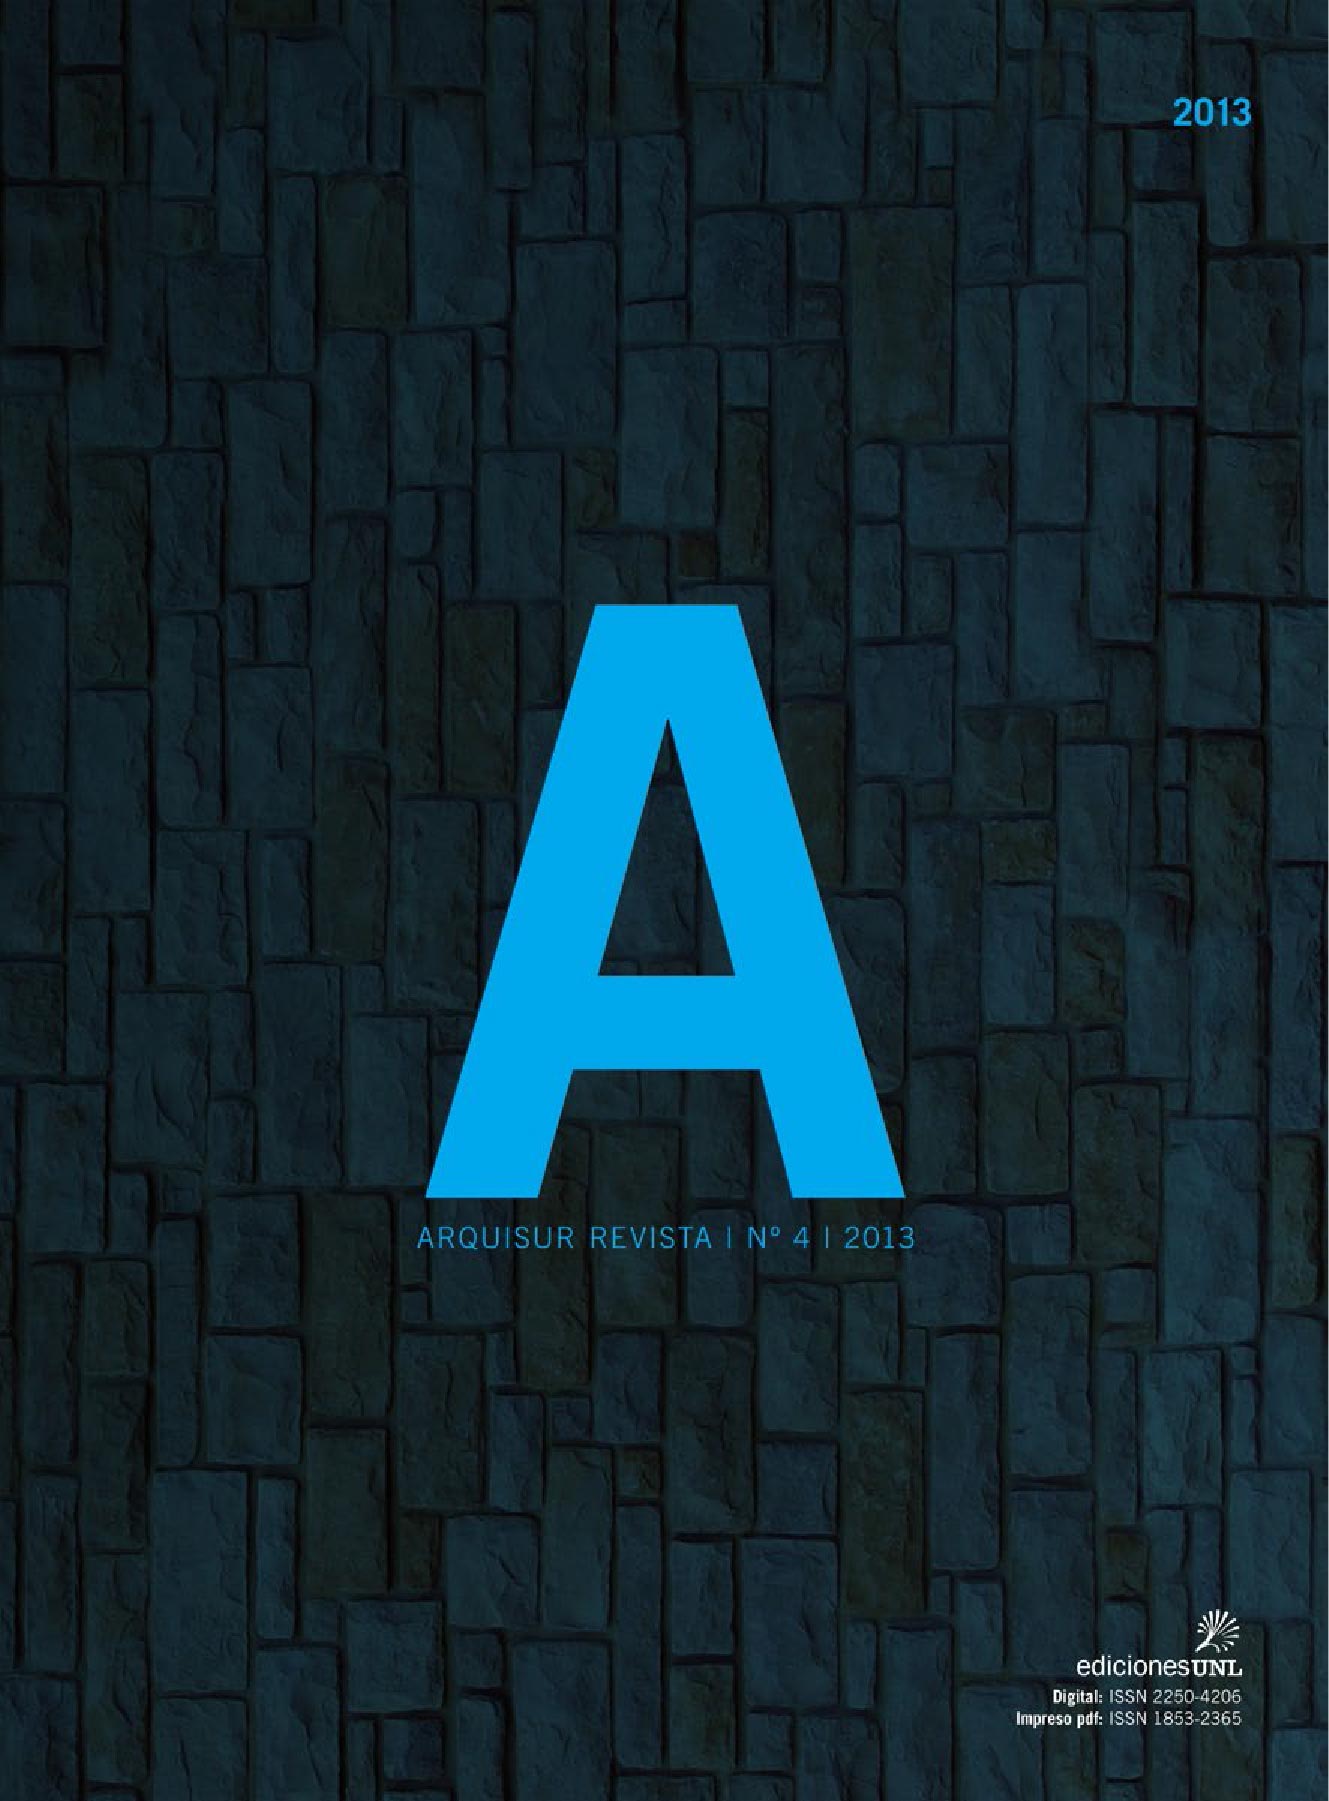 					Visualizar v. 3 n. 4: ARQUISUR REVISTA (DIC. 2013)
				